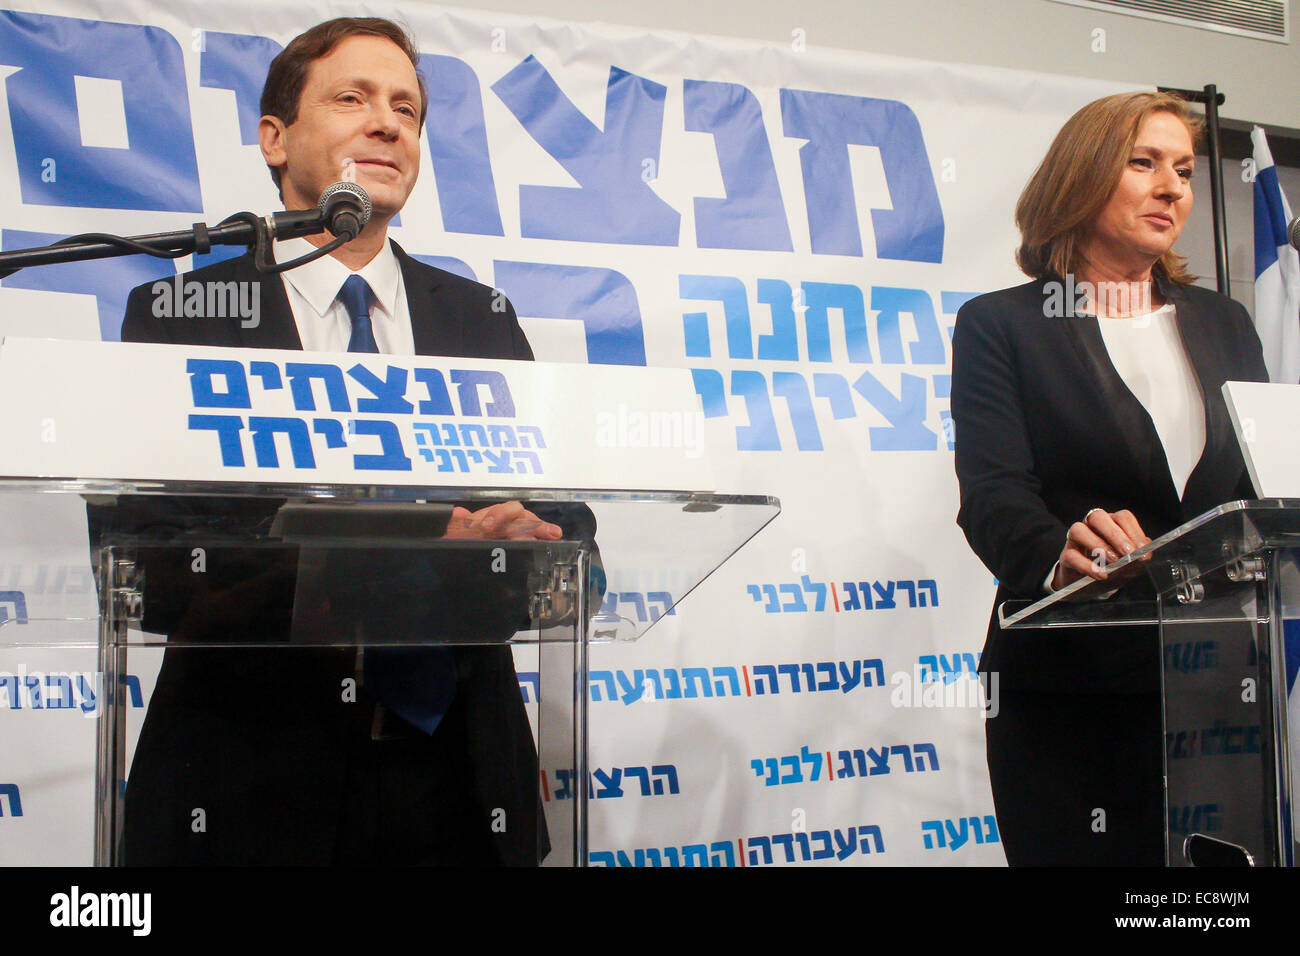 (141210) - TEL AVIV, Dic 10, 2014 (Xinhua) -- laburisti israeliani chief Yitzhak Herzog (L) parla di Israele ex ministro della giustizia Tzipi Livni guarda su nel corso di una conferenza stampa a Tel Aviv, Israele, a Dic. 10, 2014. Israele dell ex ministro della giustizia Tzipi Livni e il Partito Laburista chief Yitzhak Herzog ha annunciato mercoledì sono di unire le vostre mani prima del marzo 17 elezioni. In una conferenza stampa congiunta in Tel Aviv Mercoledì, Herzog, presidente del più grande centro-sinistra opposizione parlamentare e la Livni, capo del centro-sinistra Hatnua partito, ha annunciato il centro-sinistra elenco comune, mirando alla en Foto Stock